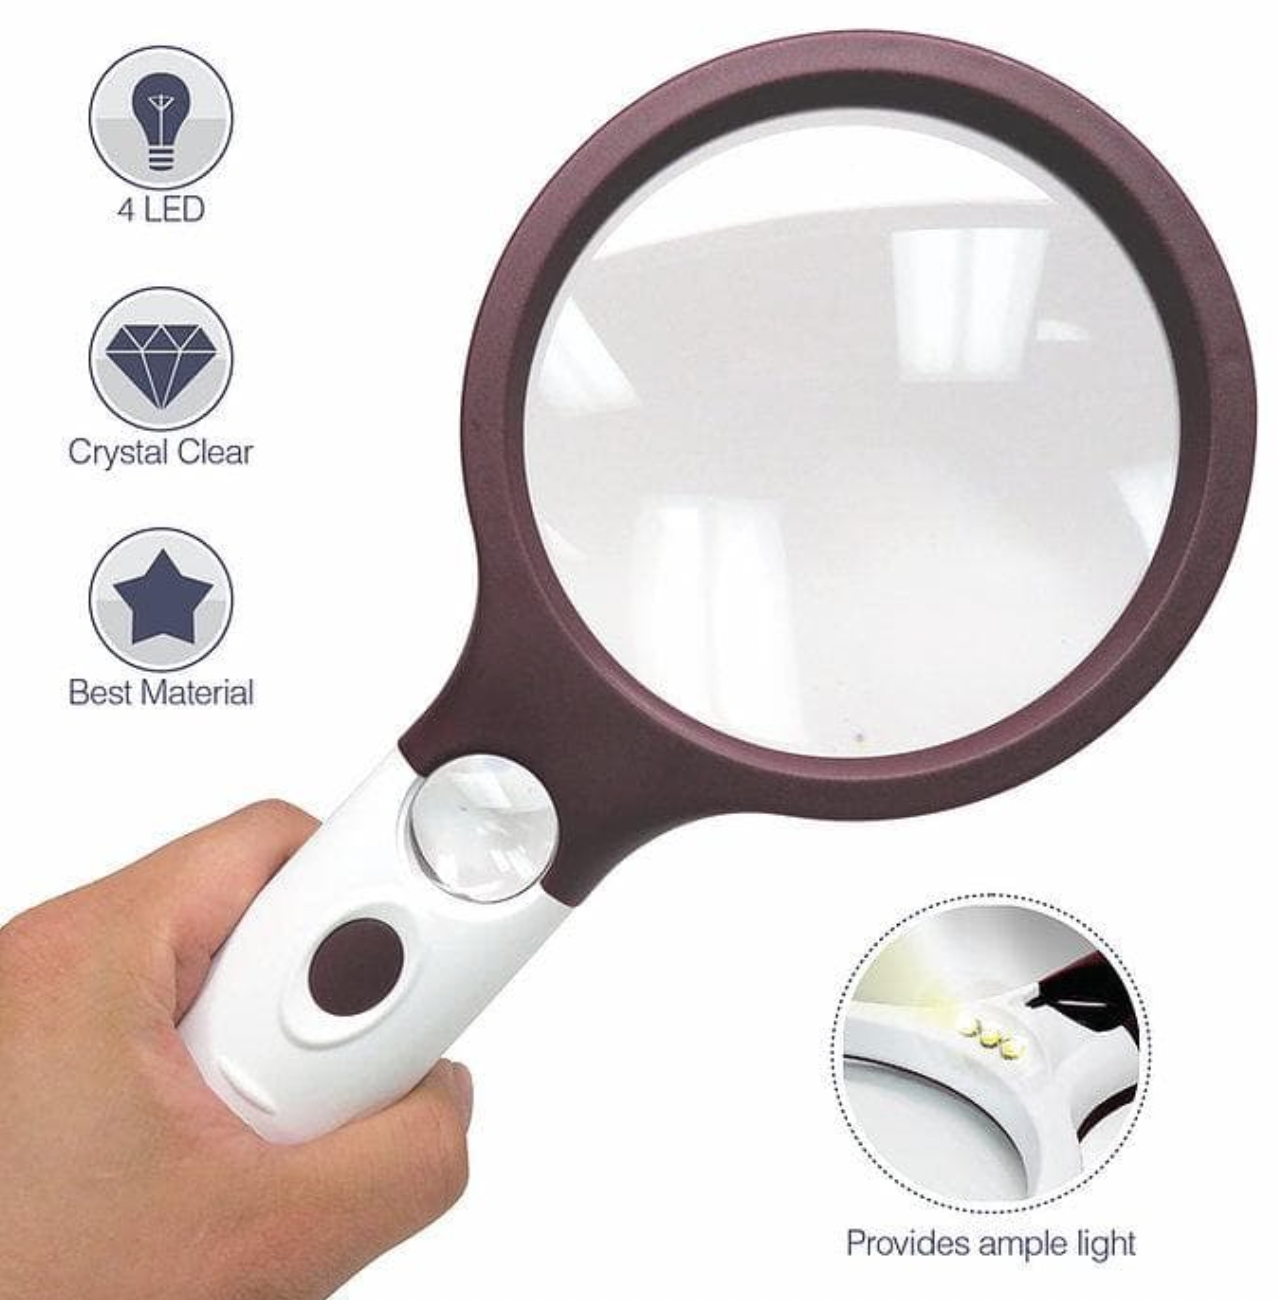 Extra Large LED Handheld Magnifying Glass with Light - Best Jumbo Size  Illuminated Reading Magnifier 